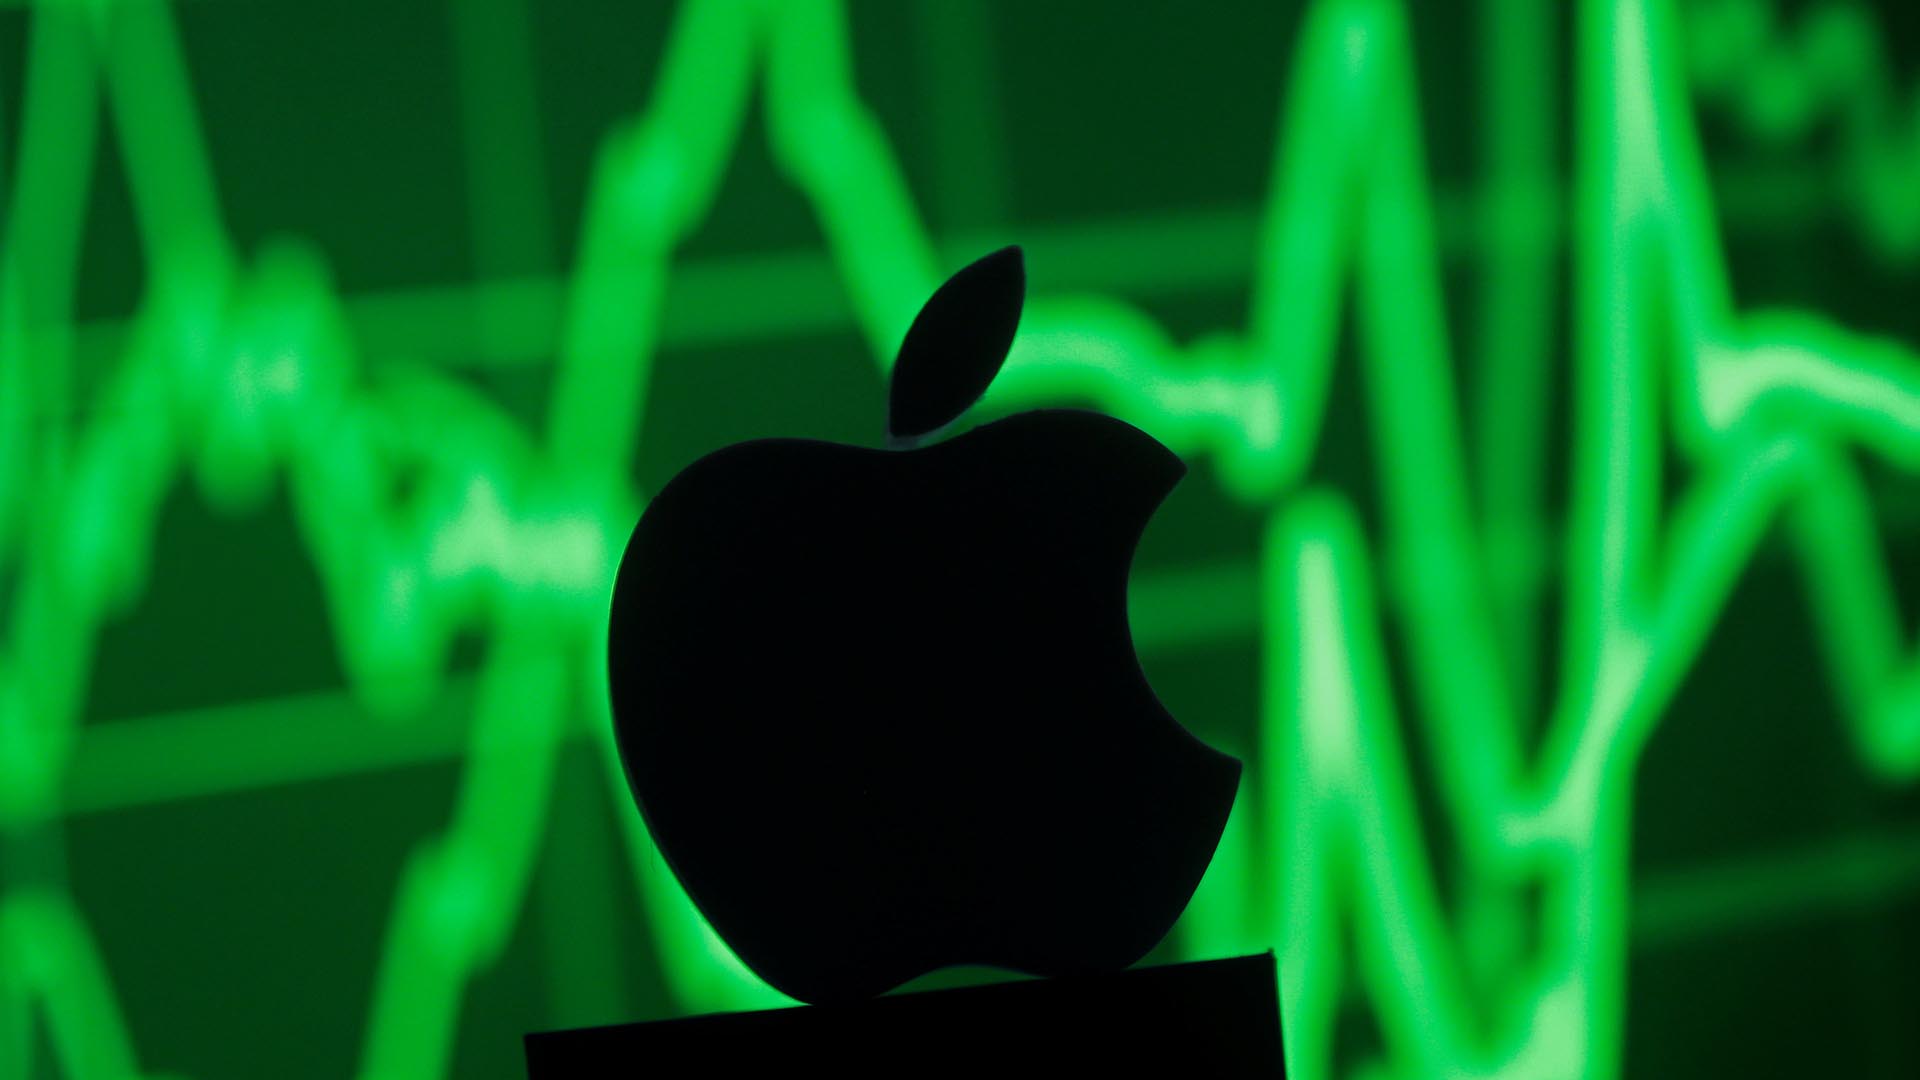 La compañía de la manzana mordida cuenta con 13 millones de clientes abonados al servicio de música streaming